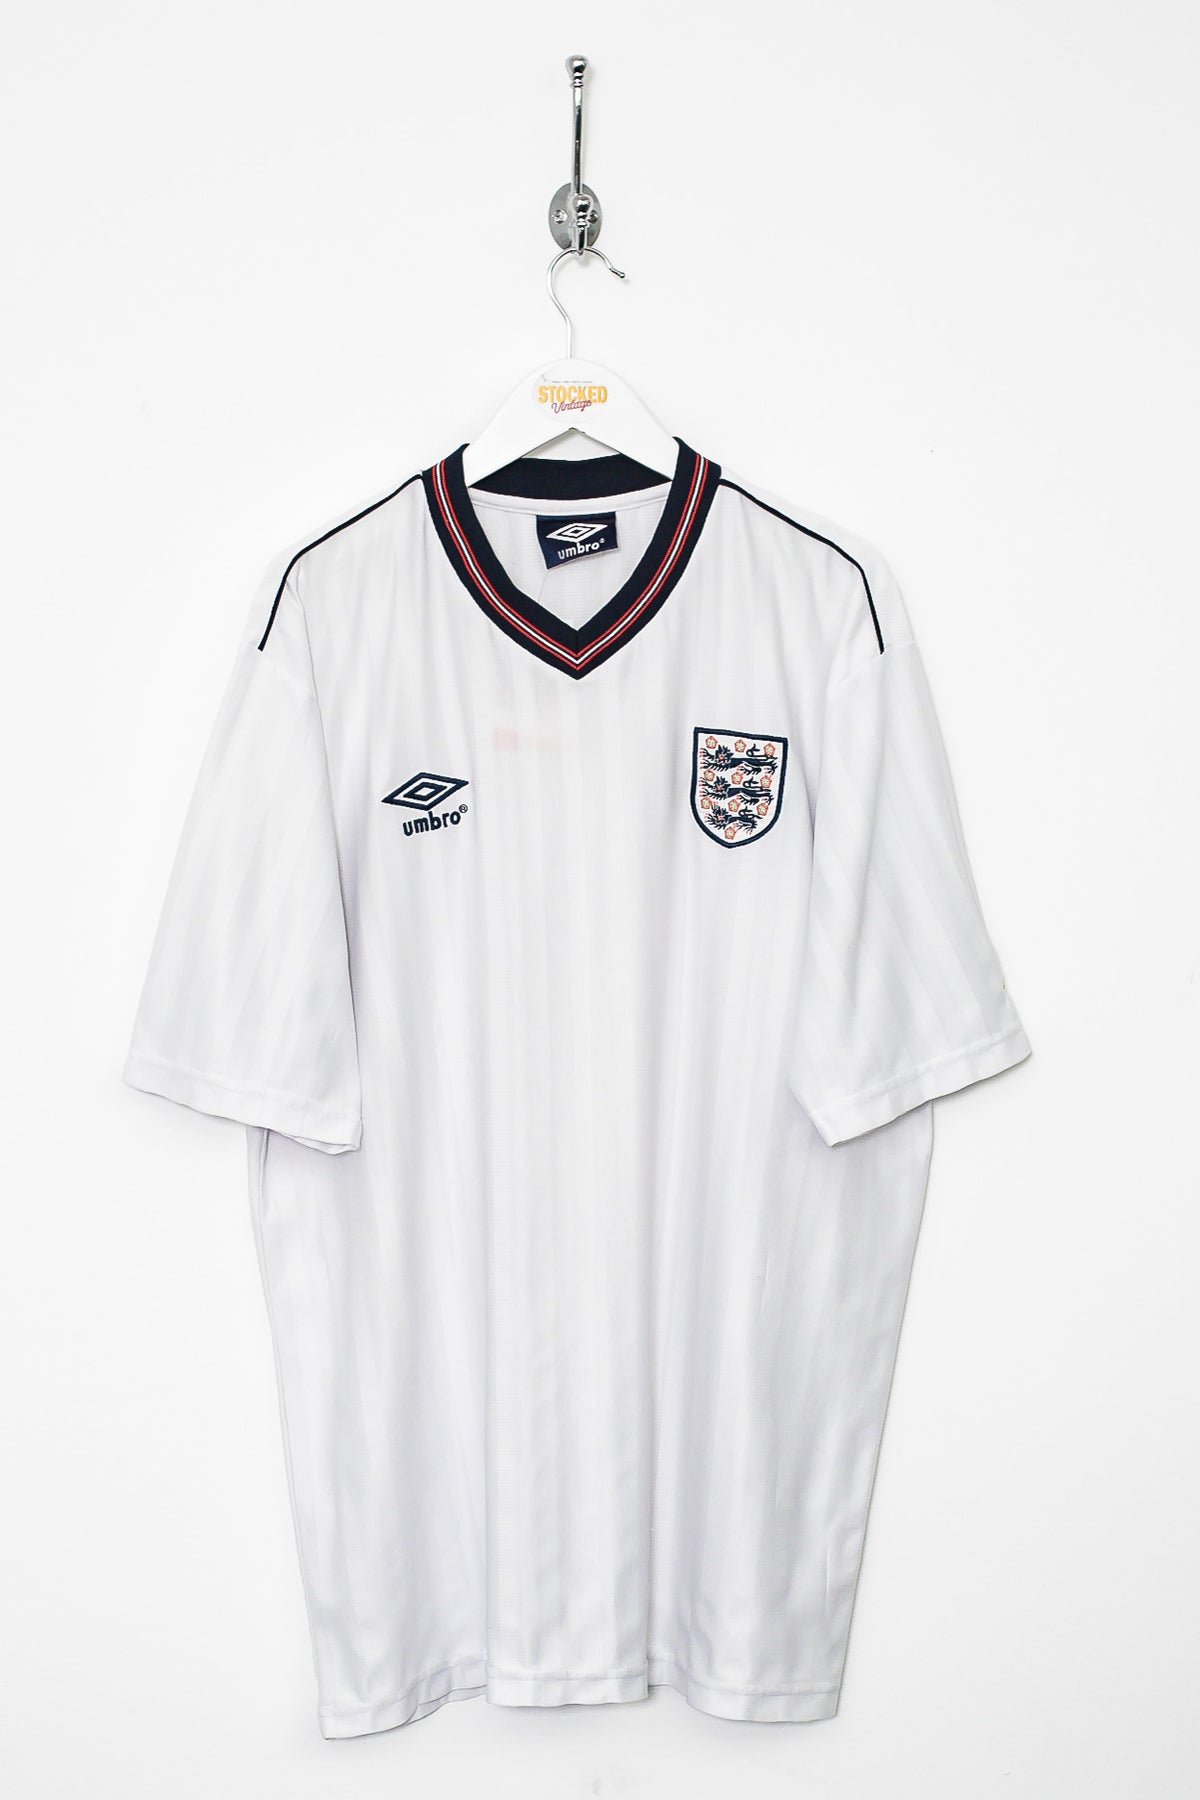 Umbro England 1986 Reissue Shirt (XL) – Stocked Vintage